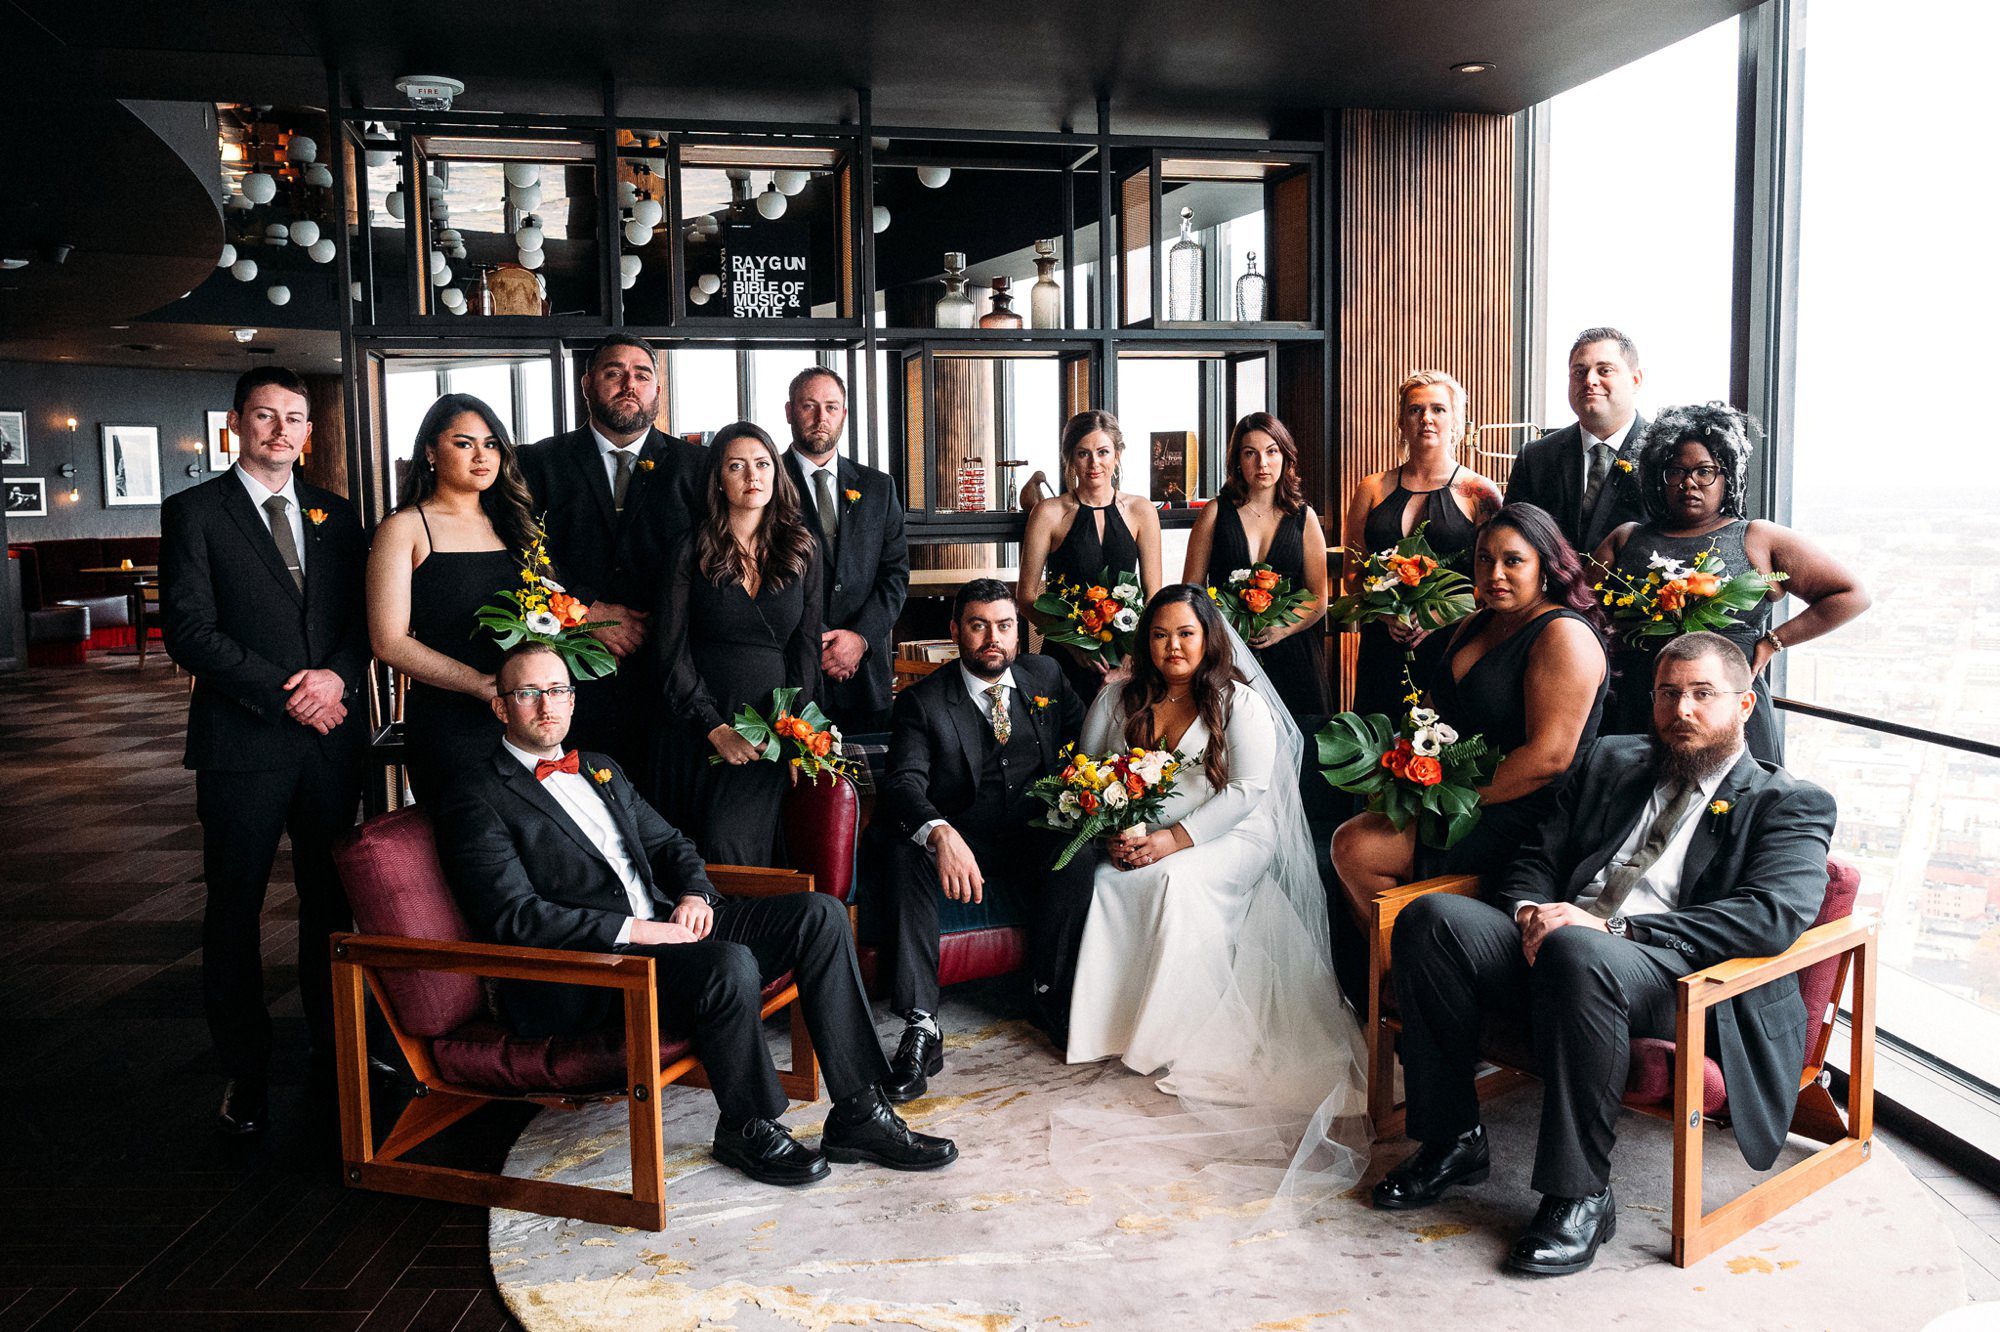 The Highland wedding photo